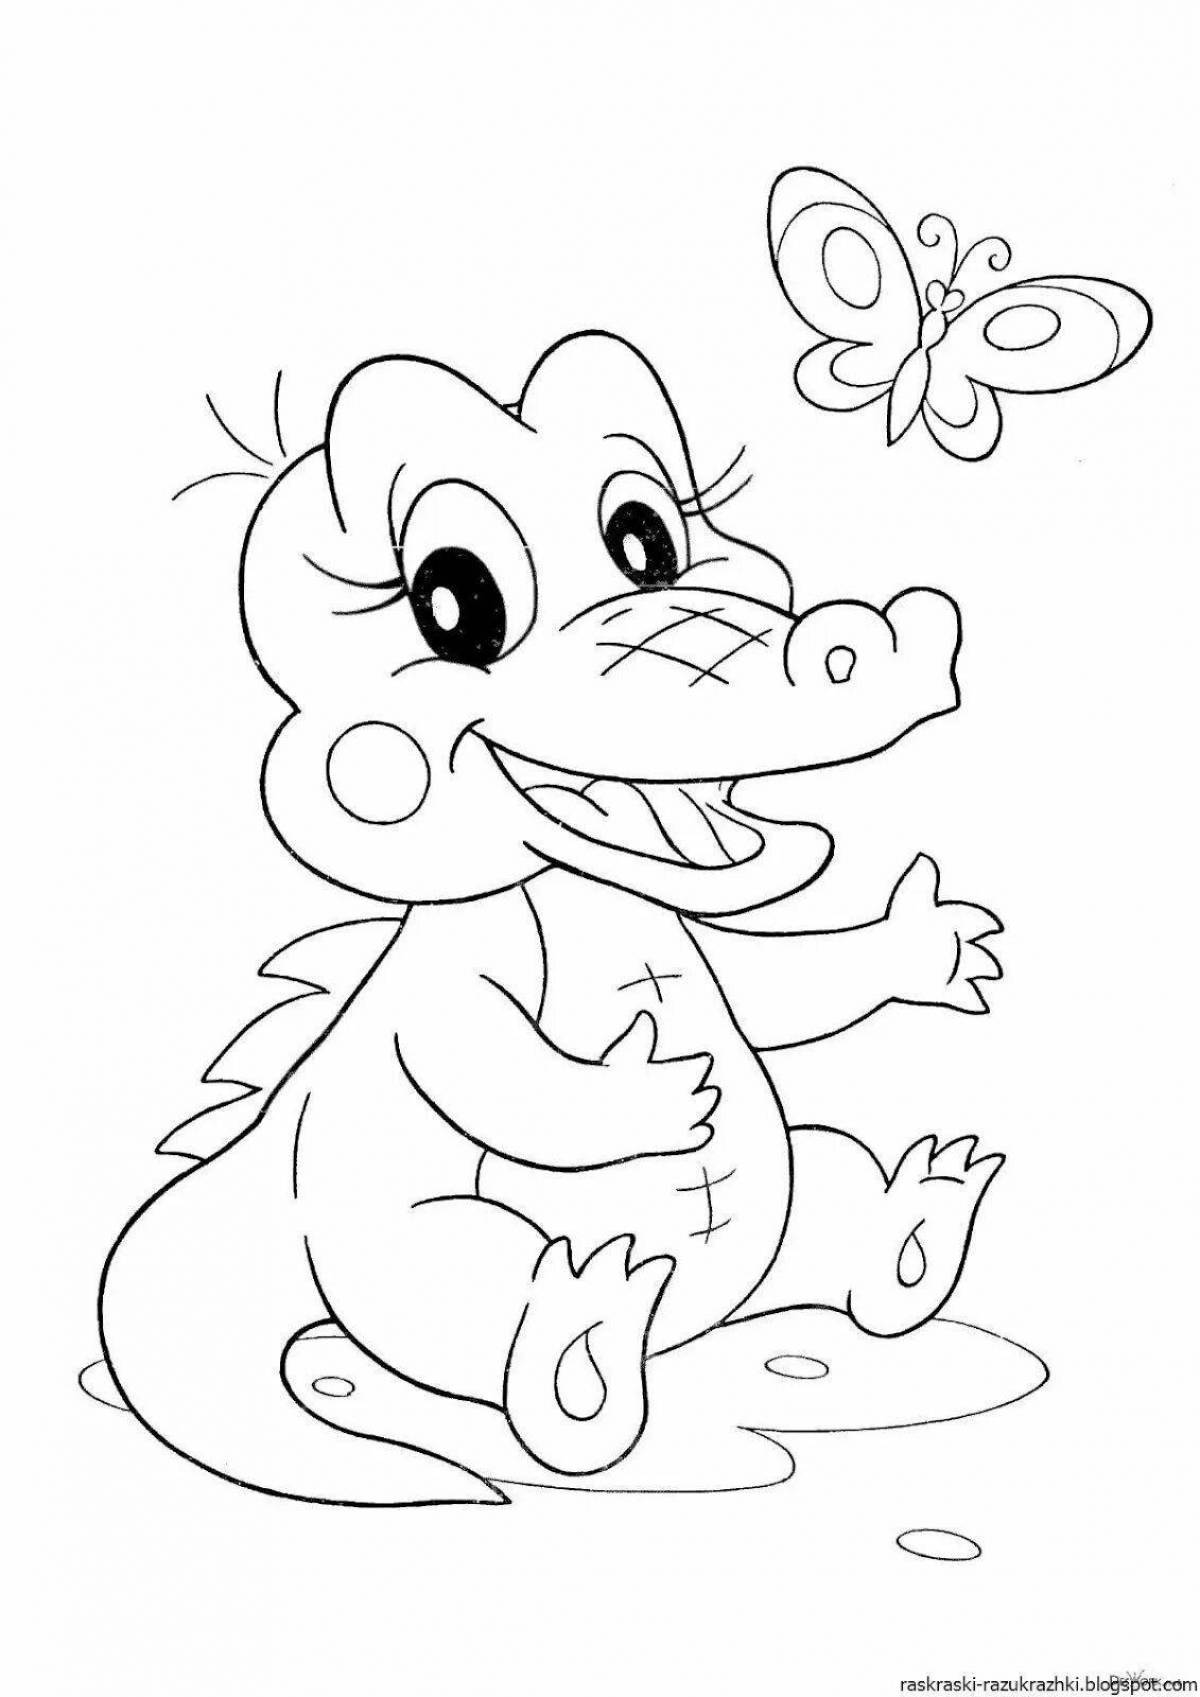 Очаровательная раскраска крокодил для детей 3-4 лет